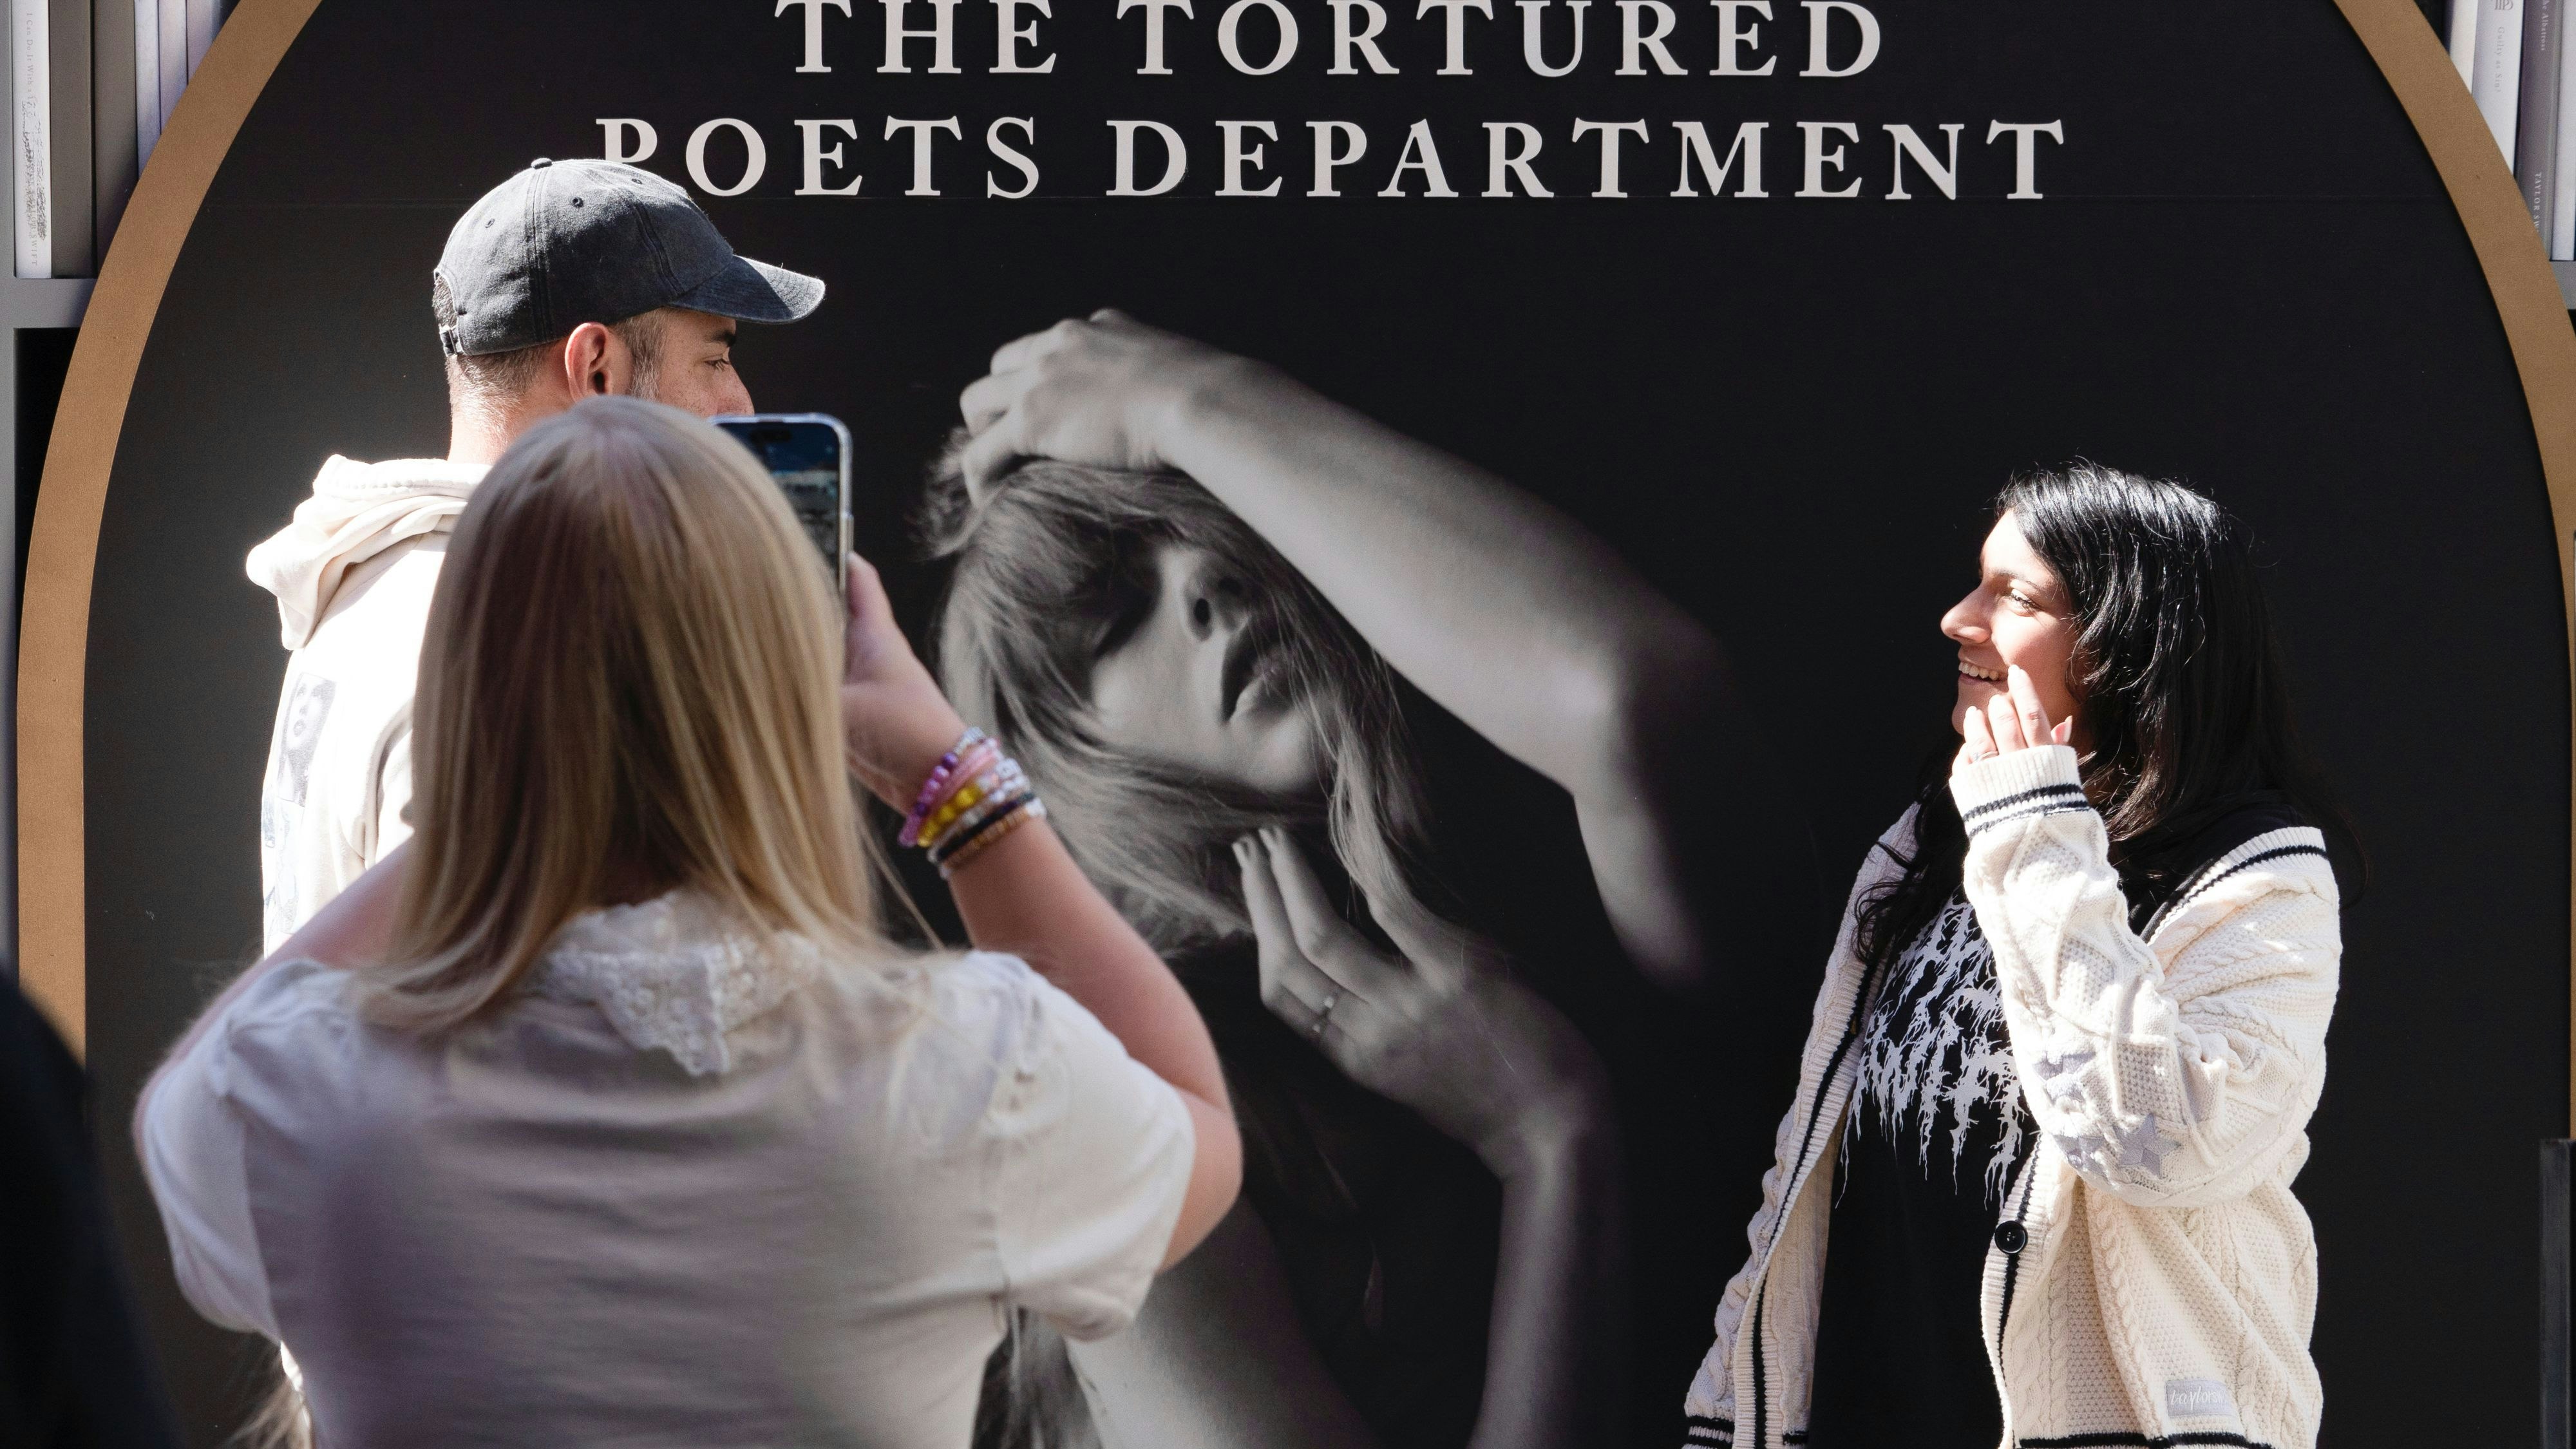 Fans schießen Selfies auf einem Pop-up-Event in Los Angeles, das auf die bevorstehende Veröffentlichung von "The Tortured Poets Department" aufmerksam macht